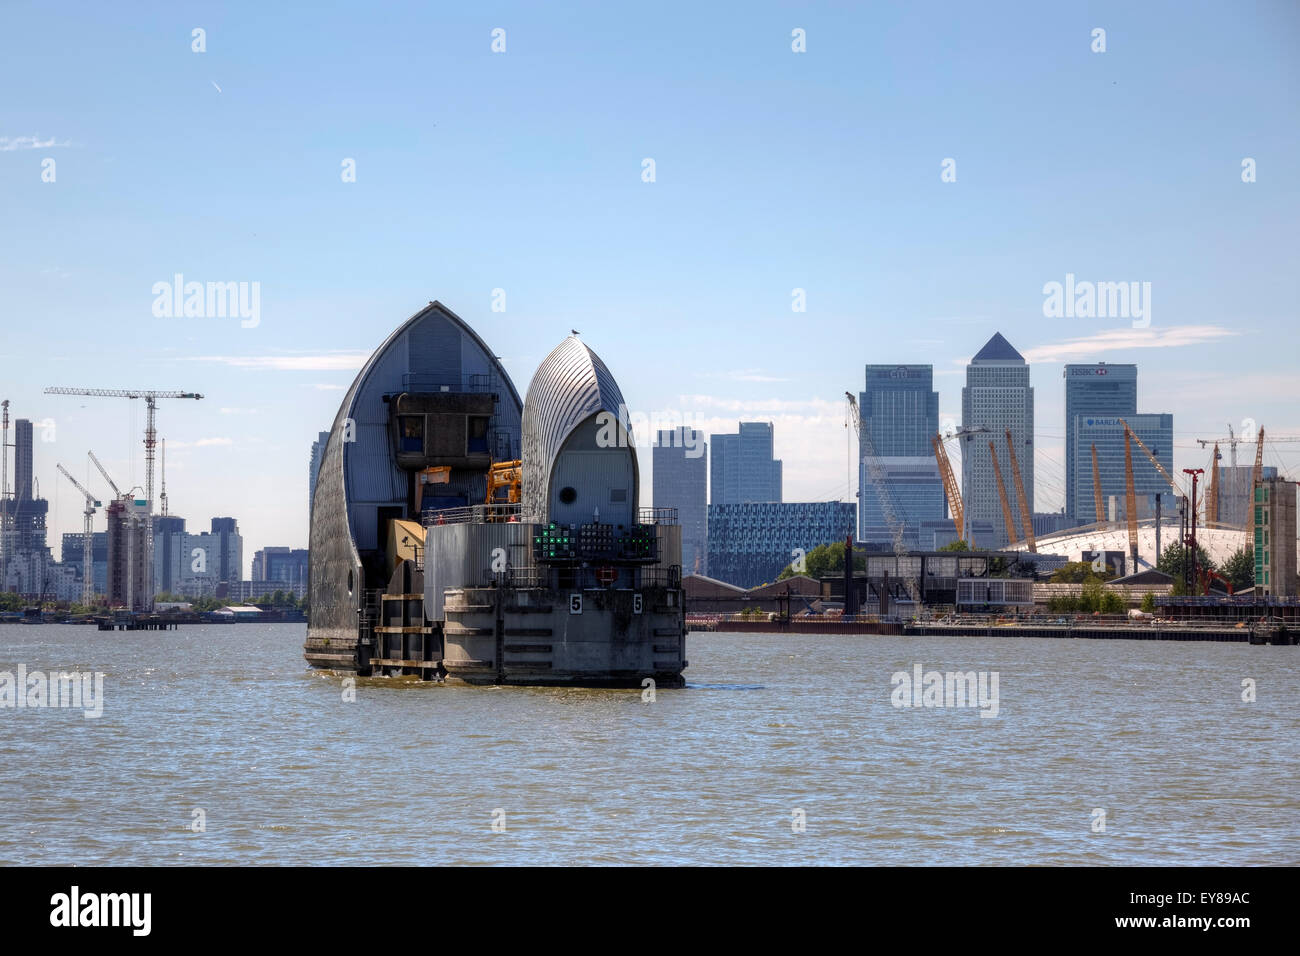 Thames Barrier, London, England, UK Banque D'Images